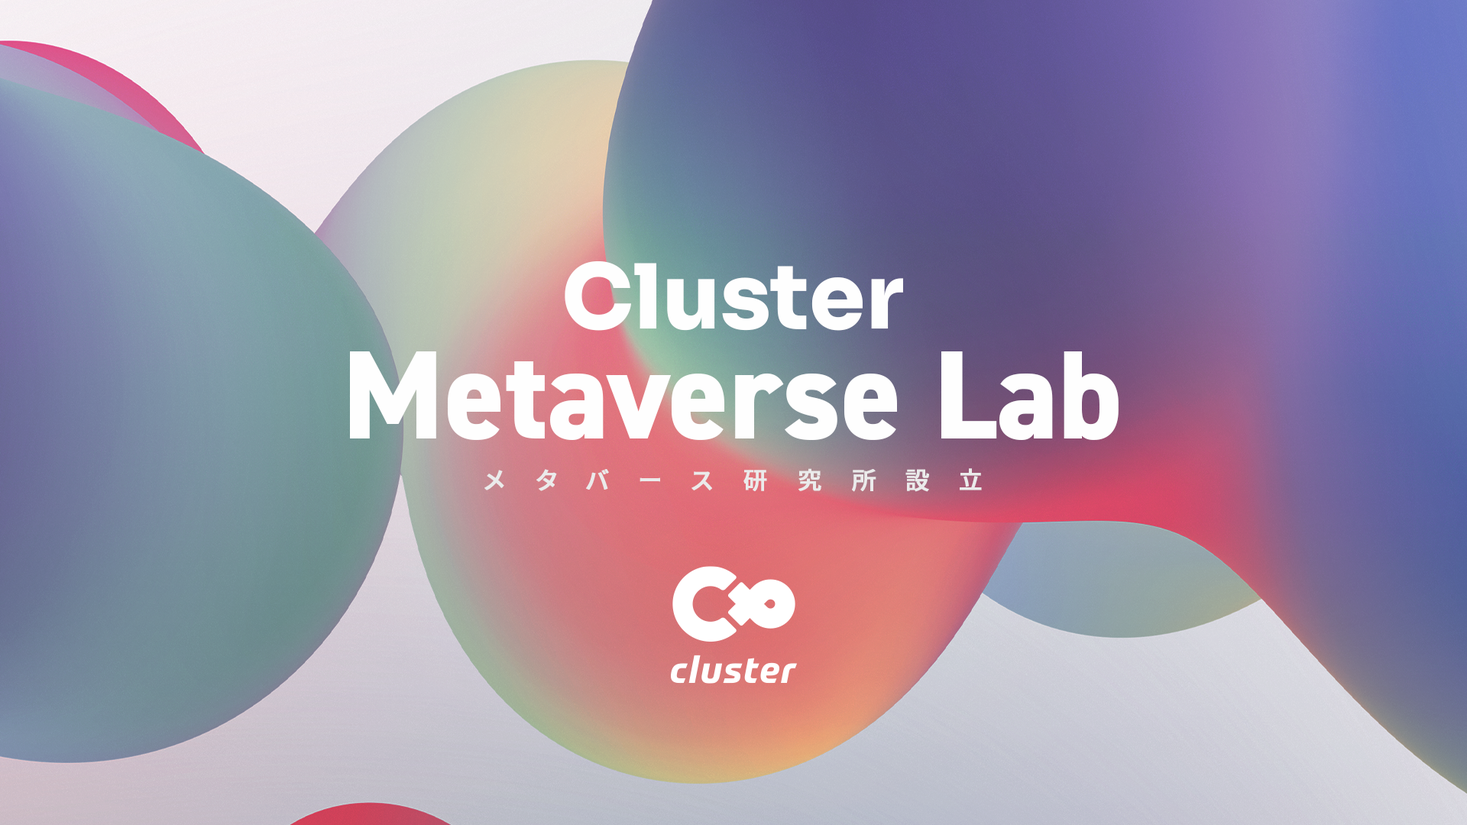 クラスター株式会社が産学連携で「メタバース研究所」を設立、日本におけるメタバースの創造、発展へ